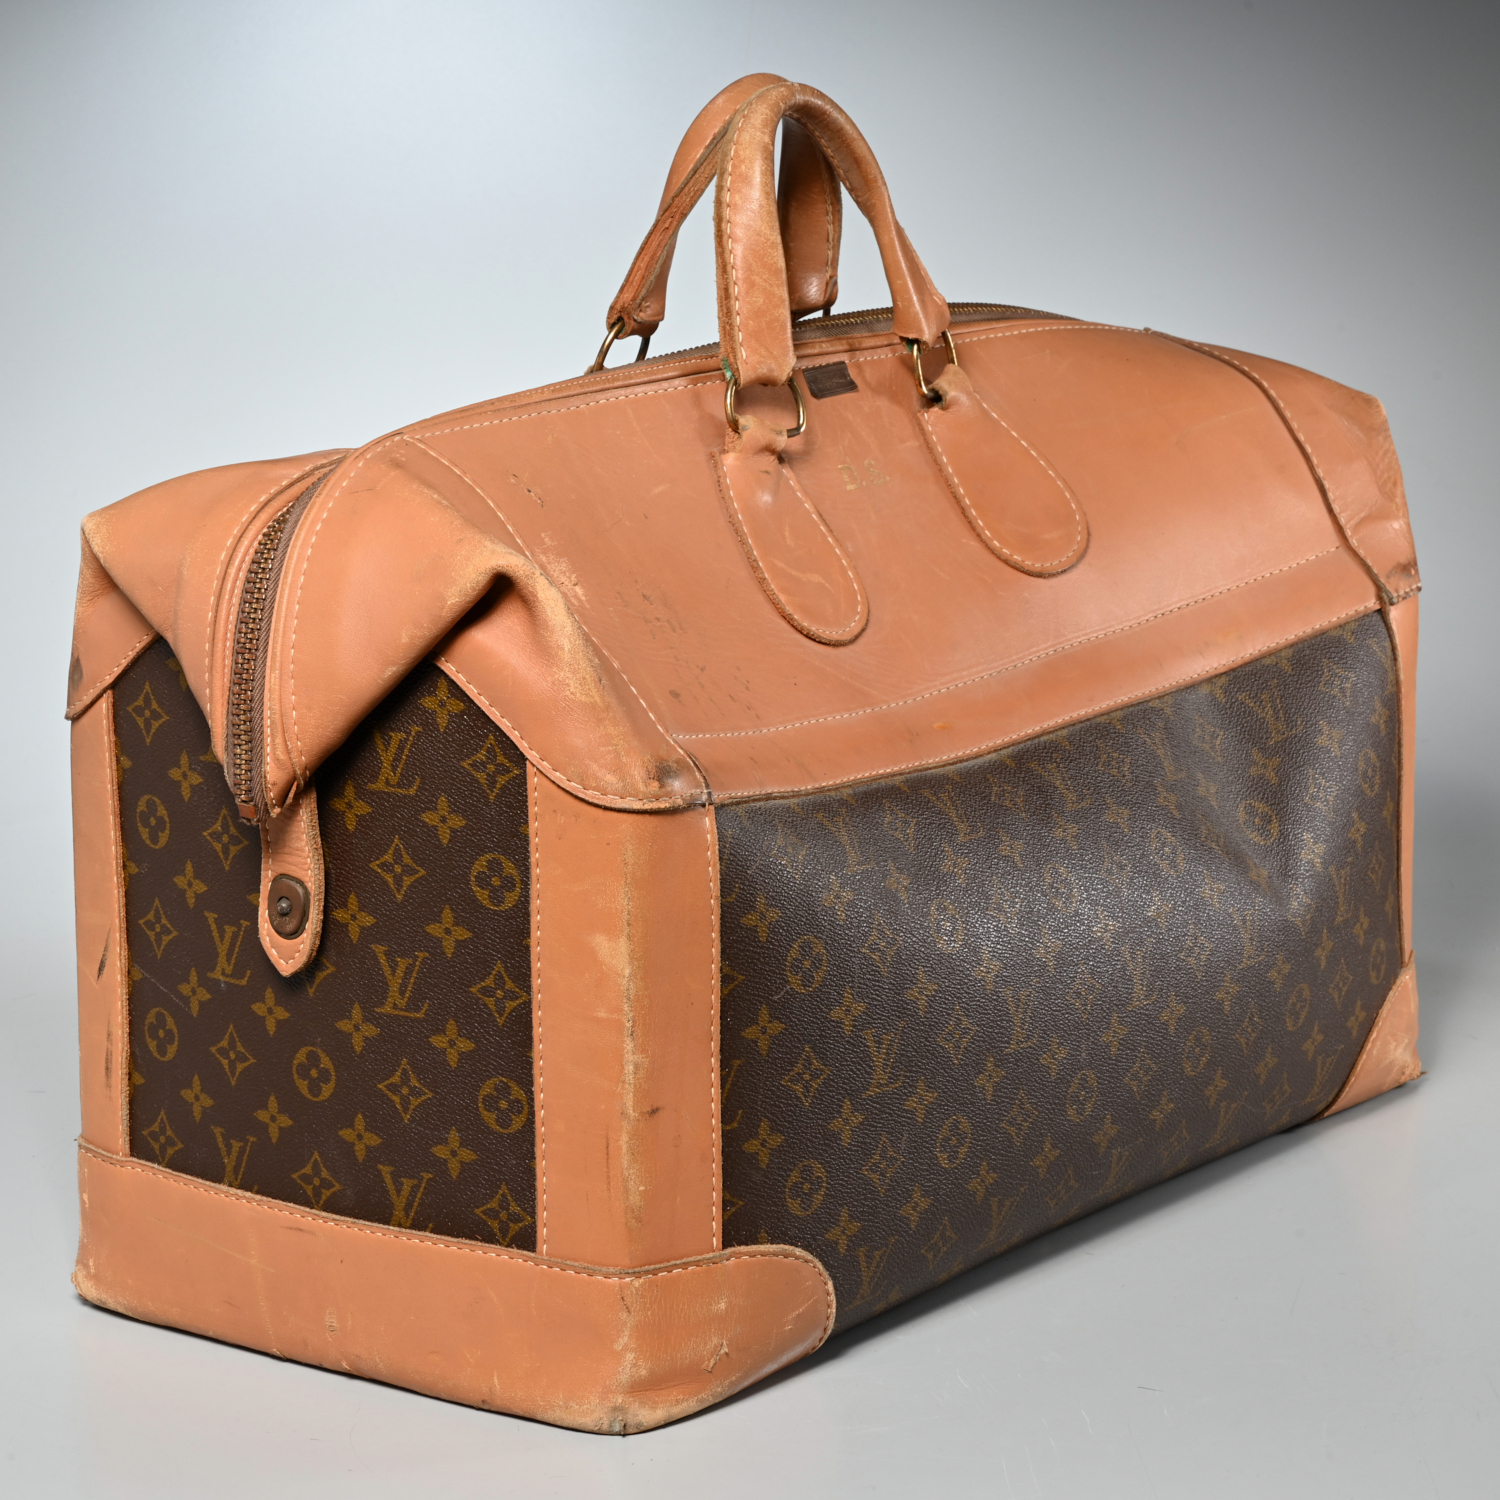 70s Louis Vuitton Large Steamer Bag Monogram Travel Tote Saks 5th